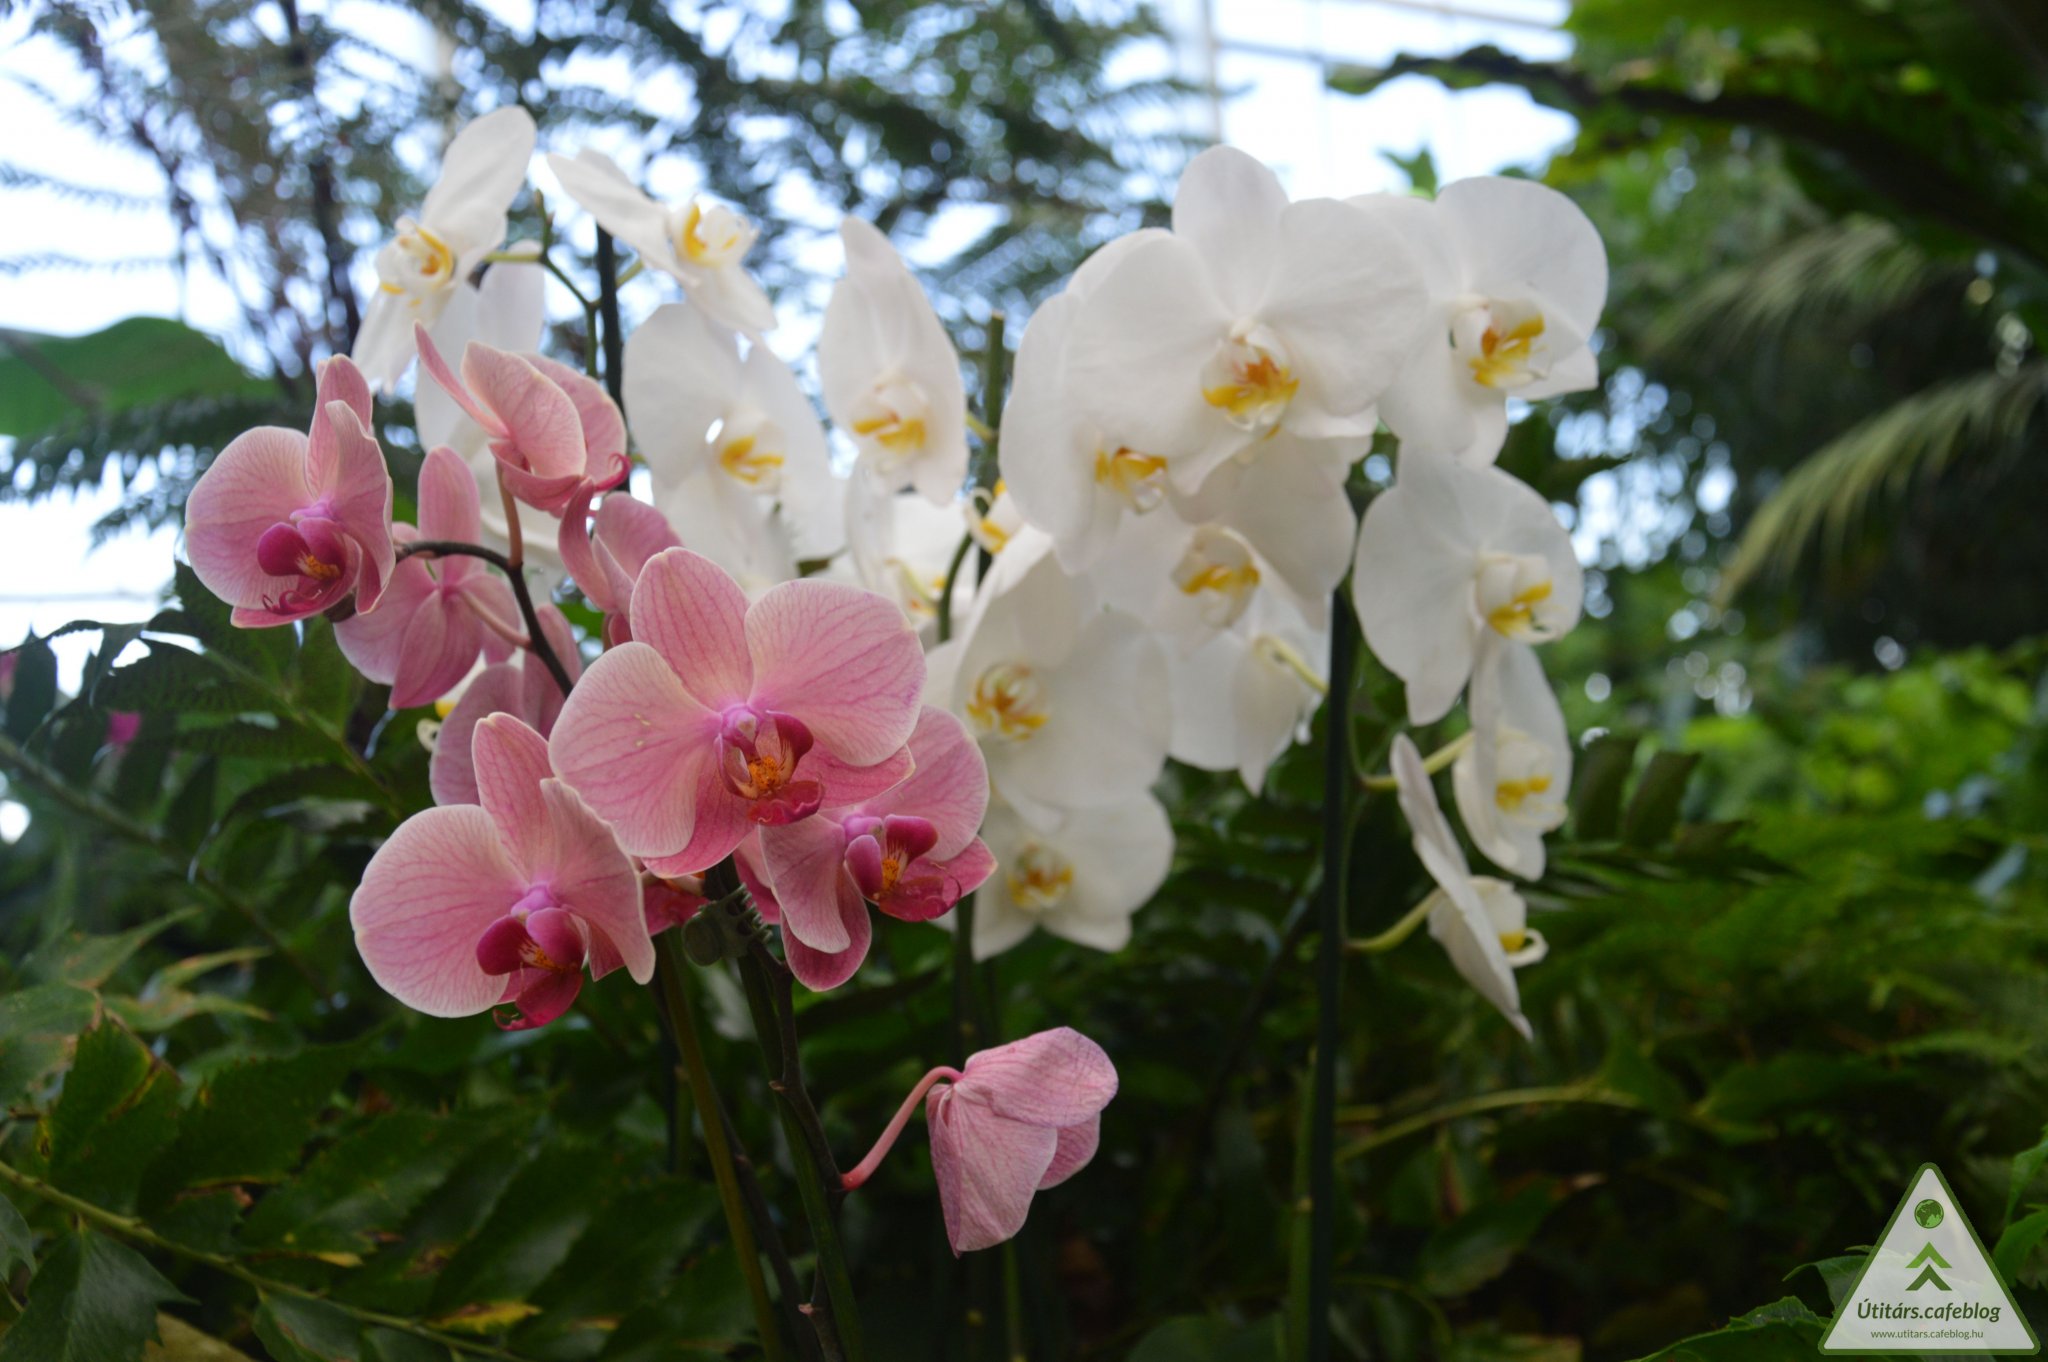 A legszebb orchideák nyílnak a határ menti faluban